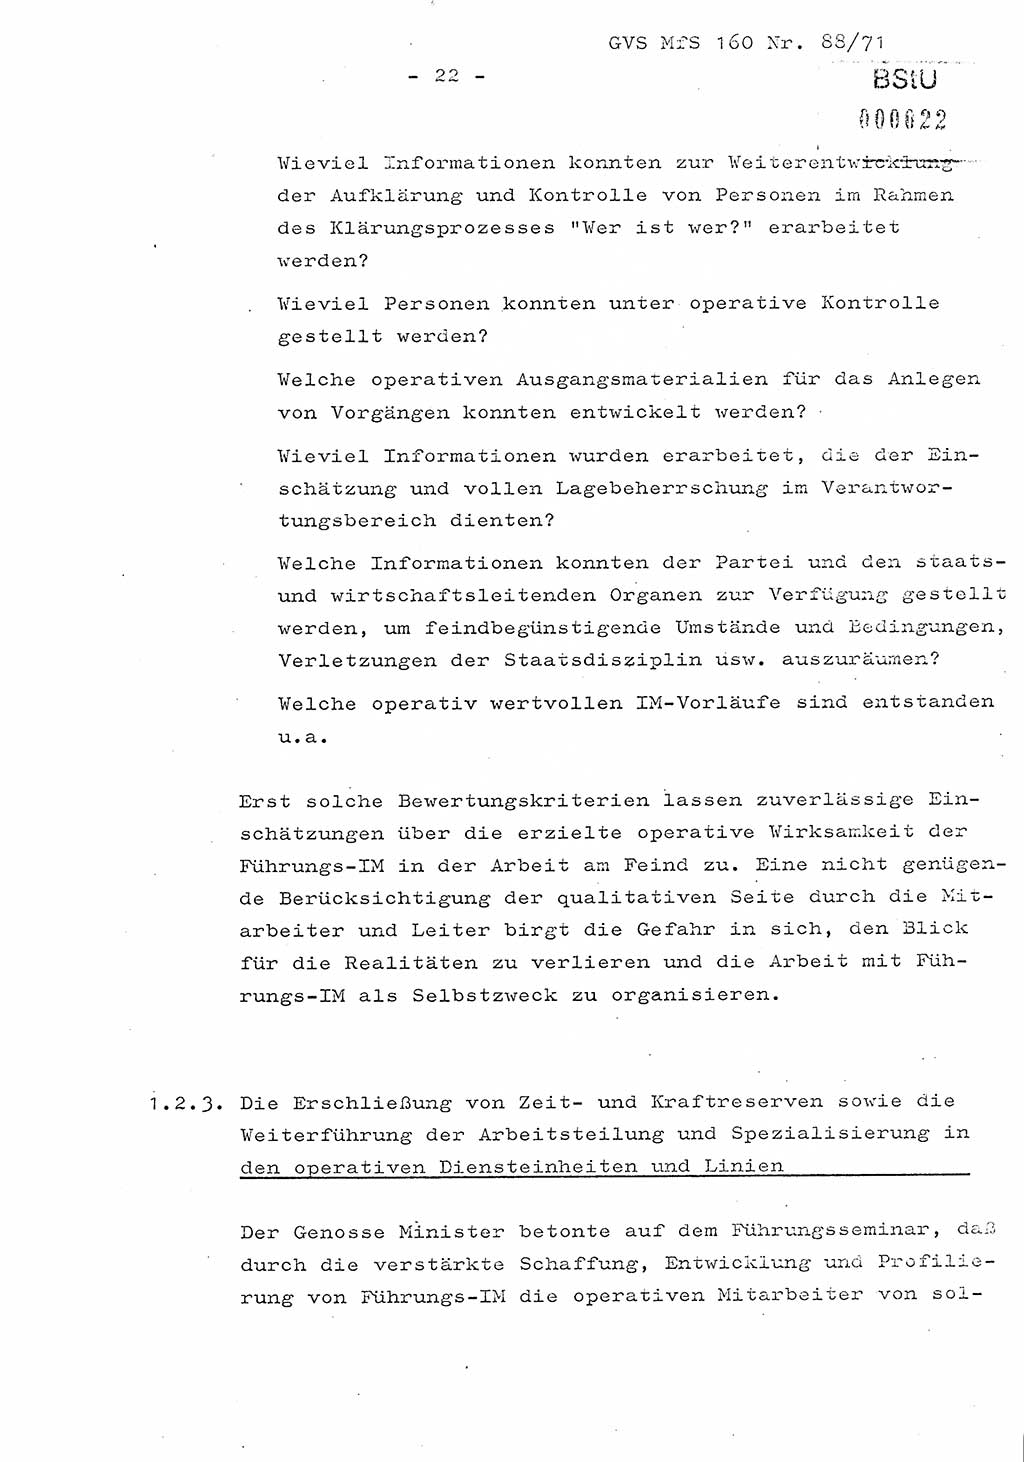 Dissertation Oberstleutnant Josef Schwarz (BV Schwerin), Major Fritz Amm (JHS), Hauptmann Peter Gräßler (JHS), Ministerium für Staatssicherheit (MfS) [Deutsche Demokratische Republik (DDR)], Juristische Hochschule (JHS), Geheime Verschlußsache (GVS) 160-88/71, Potsdam 1972, Seite 22 (Diss. MfS DDR JHS GVS 160-88/71 1972, S. 22)